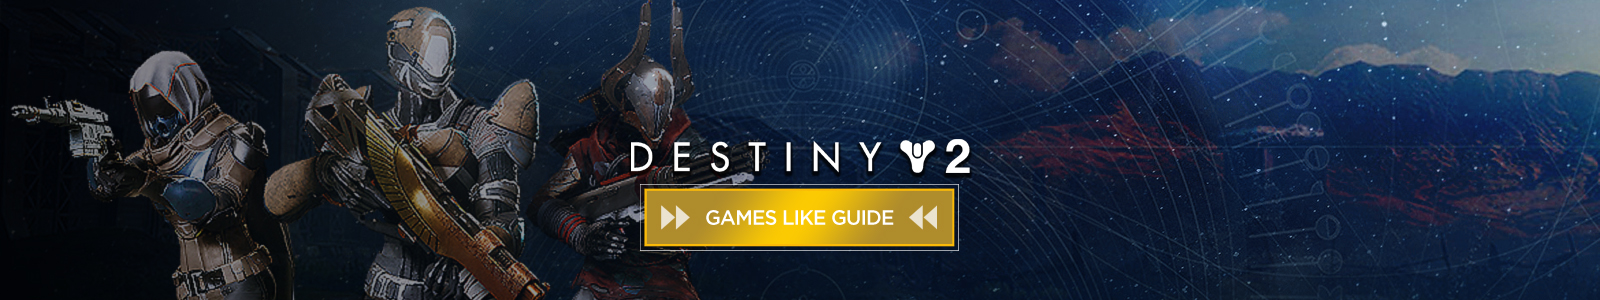 Destiny 2 games like guide